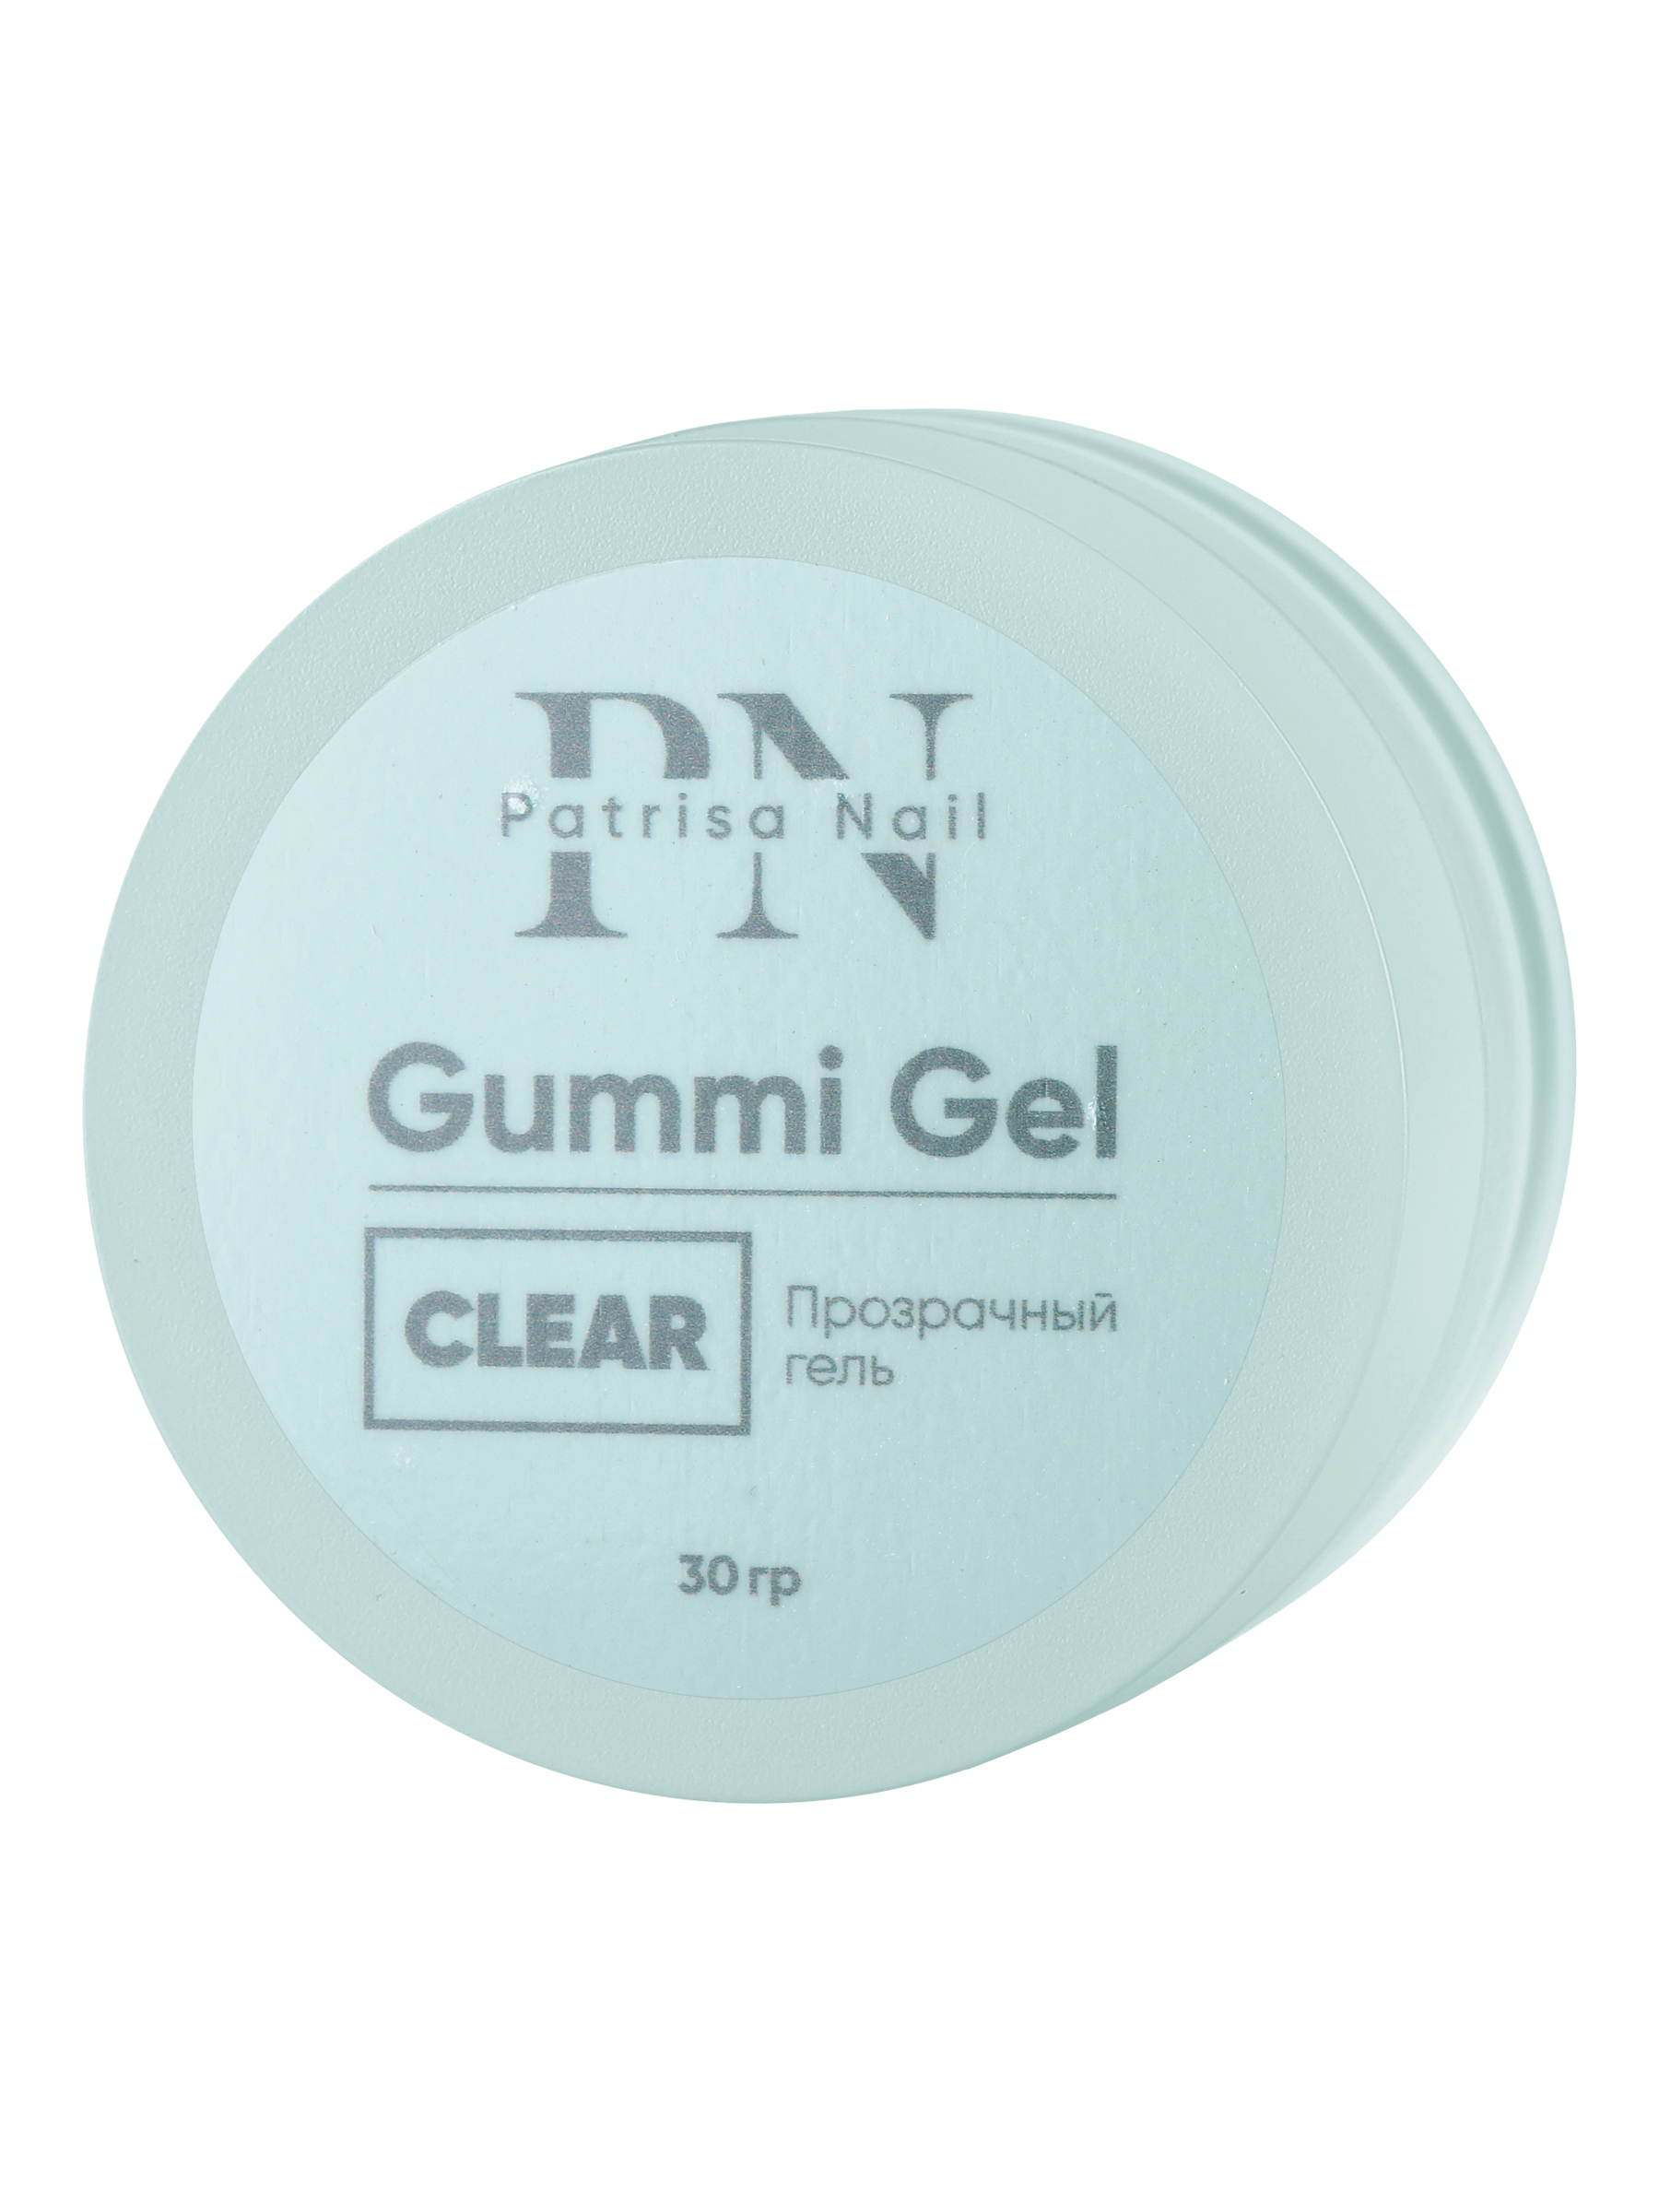 Прозрачный гель Patrisa nail Gummi Gel Clear высокой вязкости 30 г